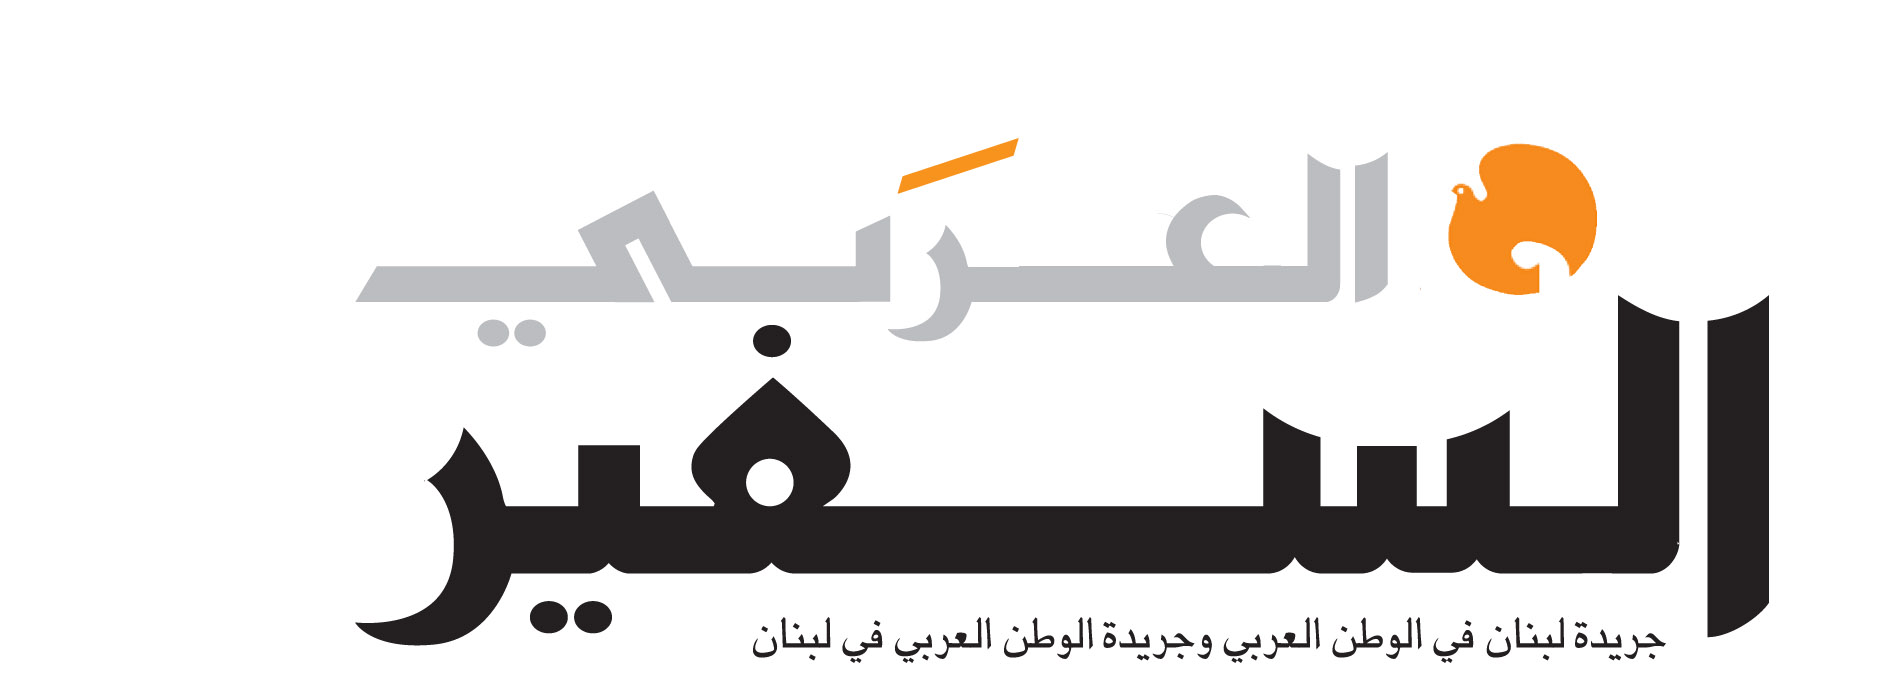 السفير العربي Banner